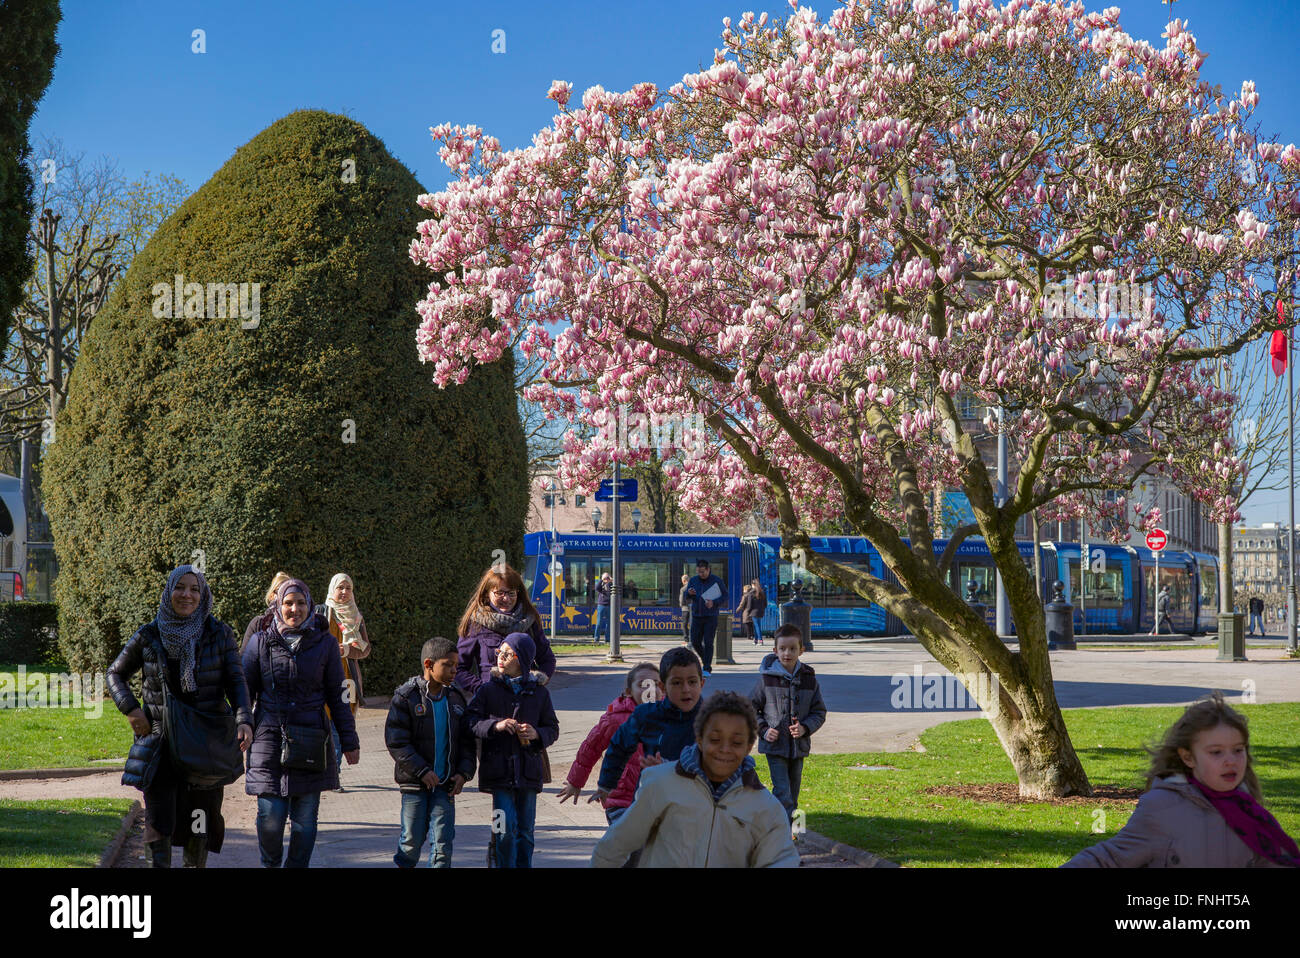 Fioritura albero di magnolia, scolari, Place de la République square, Strasburgo, Alsazia, Francia Foto Stock